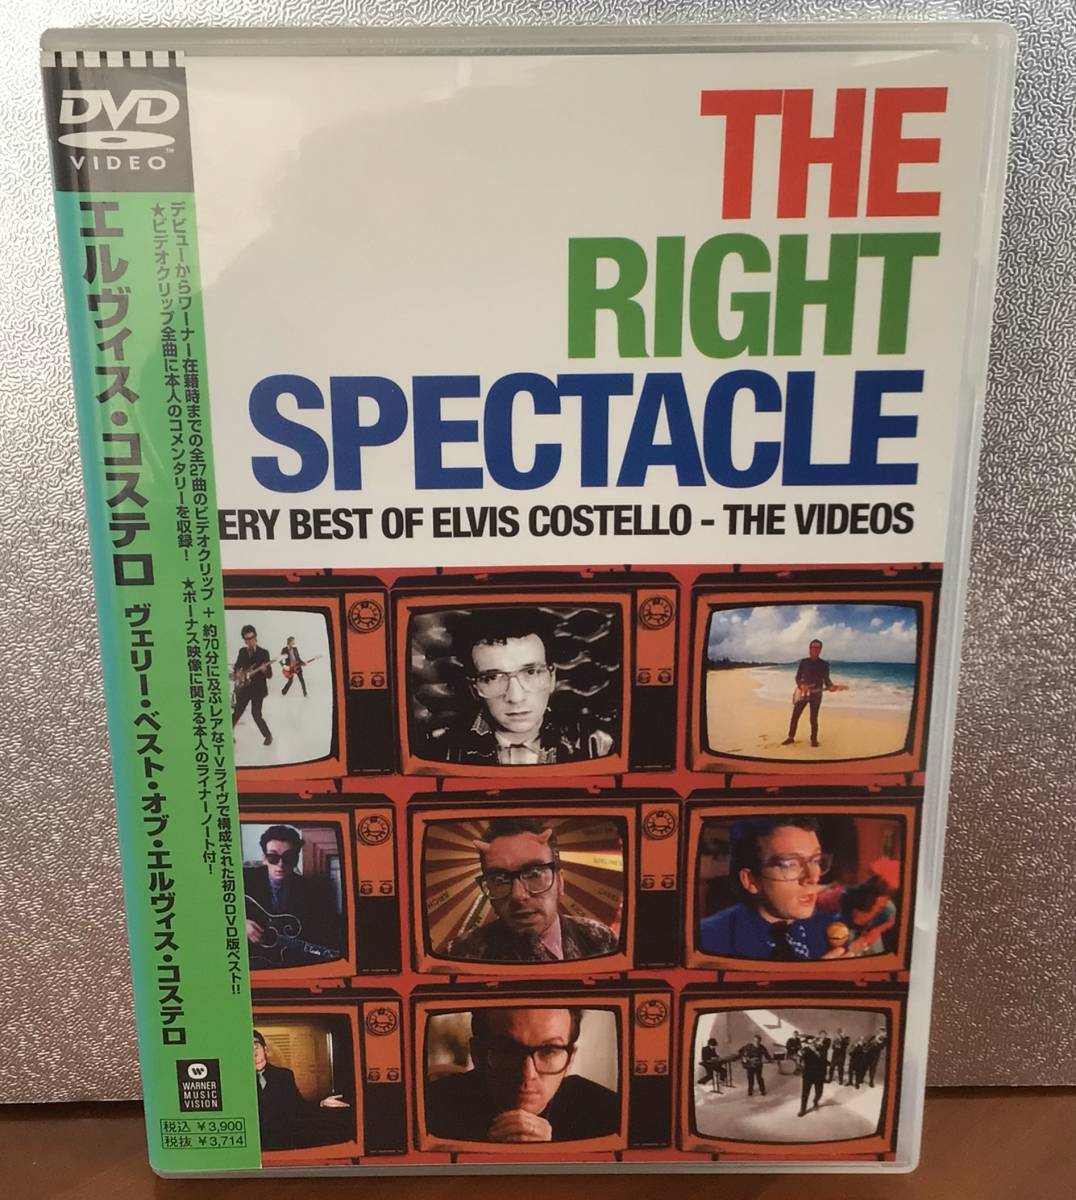 エルビス・コステロ The Right Spectacle: The Very Best Of Elvis Costello The Videos DVD 国内盤 2005年 の画像1